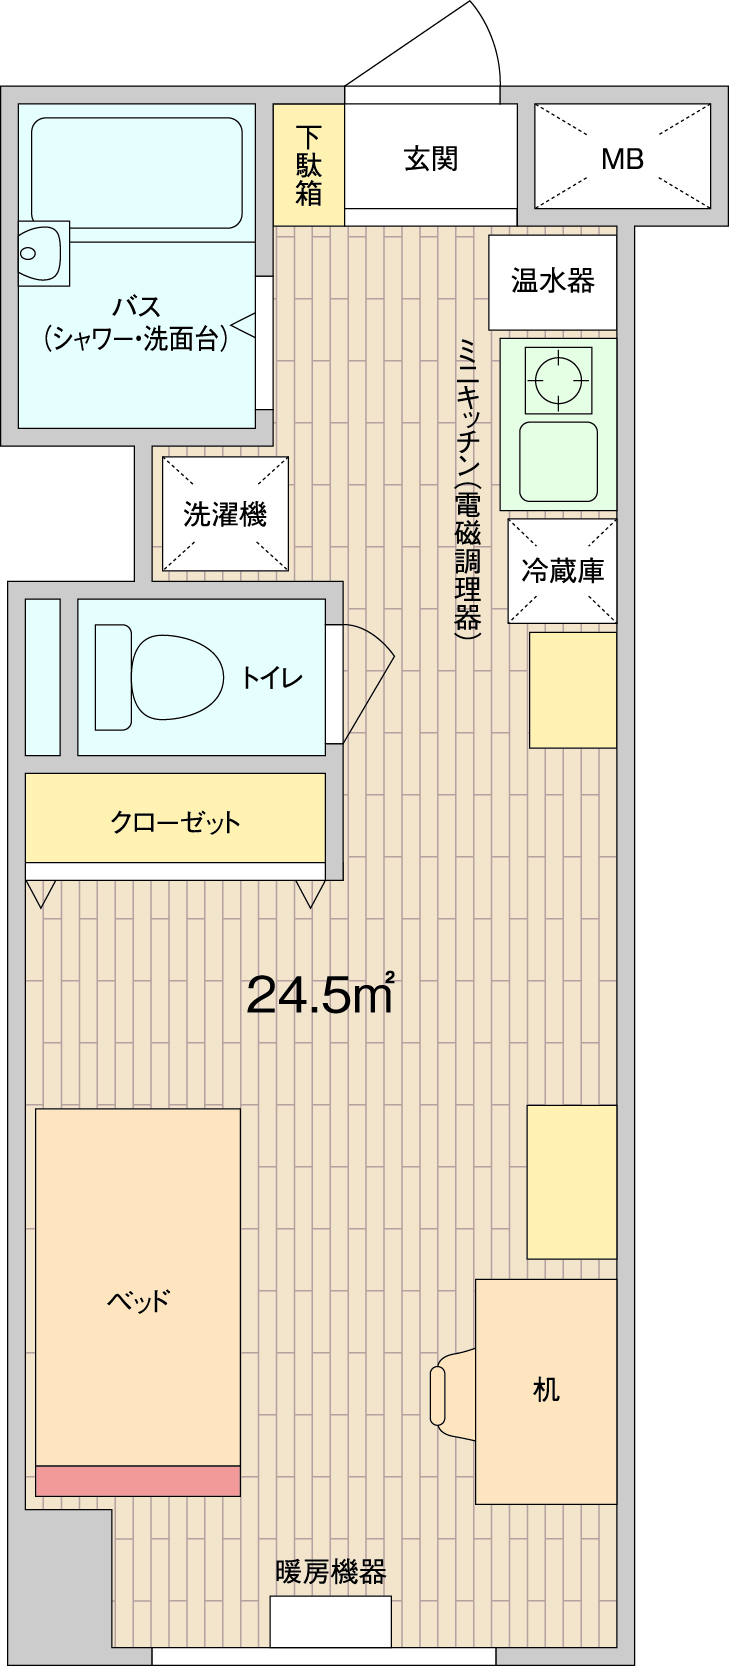 スチューデントハイム札幌大通の一室の間取り図